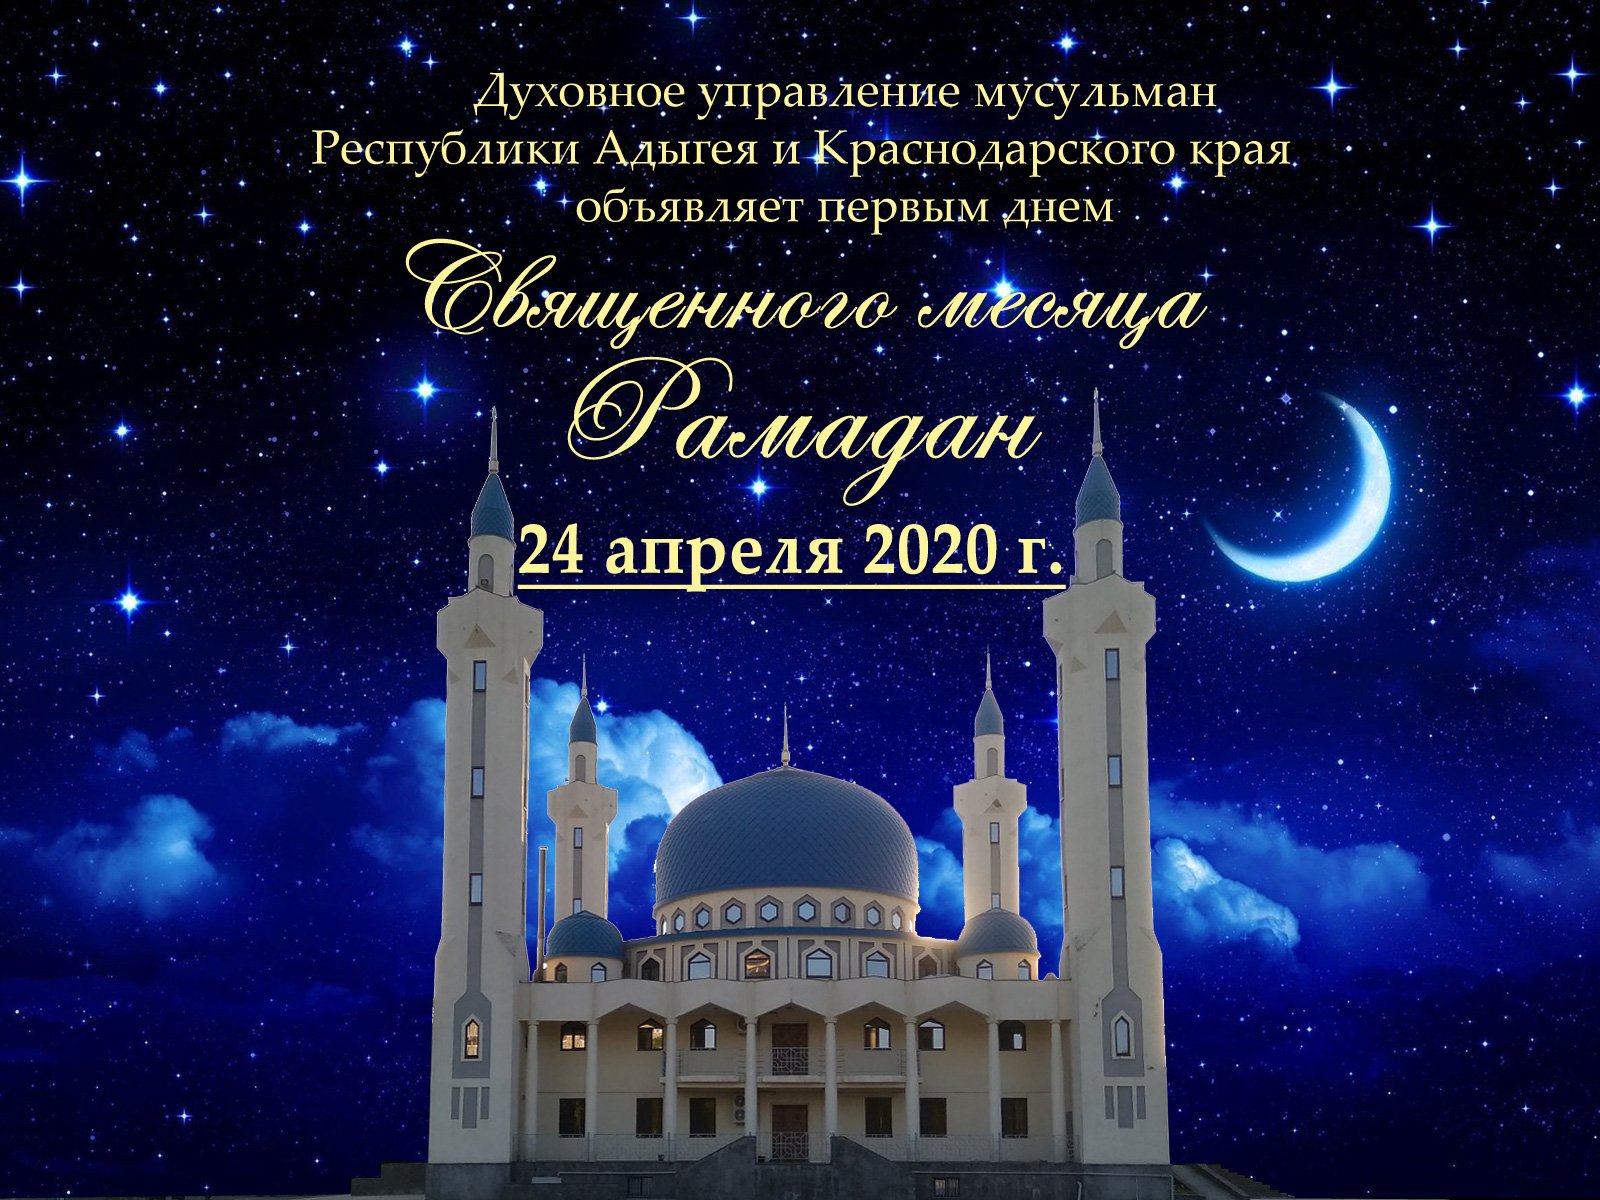 Поздравления на турецком языке,Mübarek ramazan